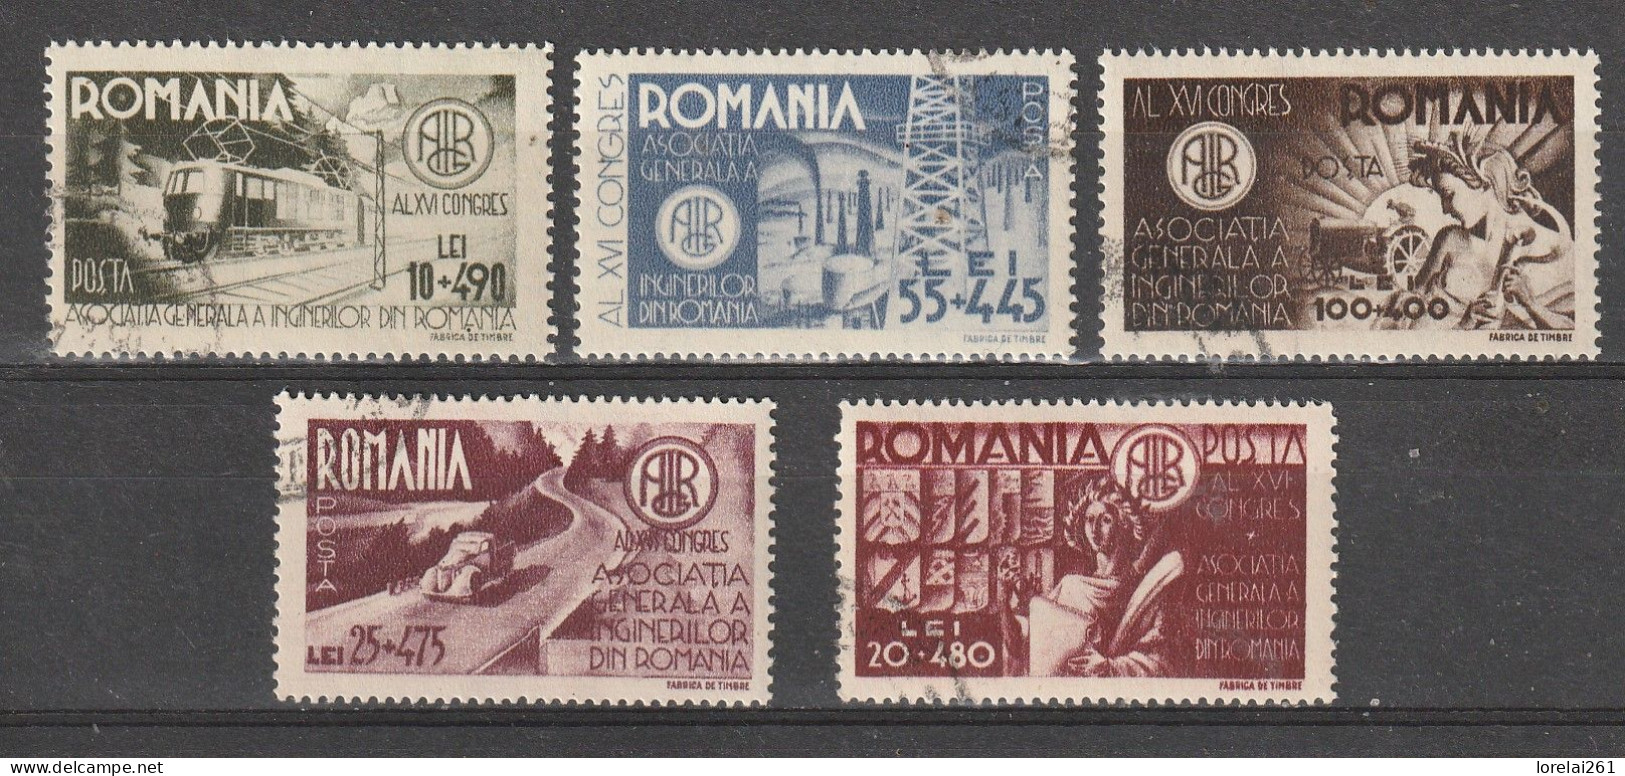 1945 -  Association Générale Des Ingénieurs Mi No 903/907 - Used Stamps